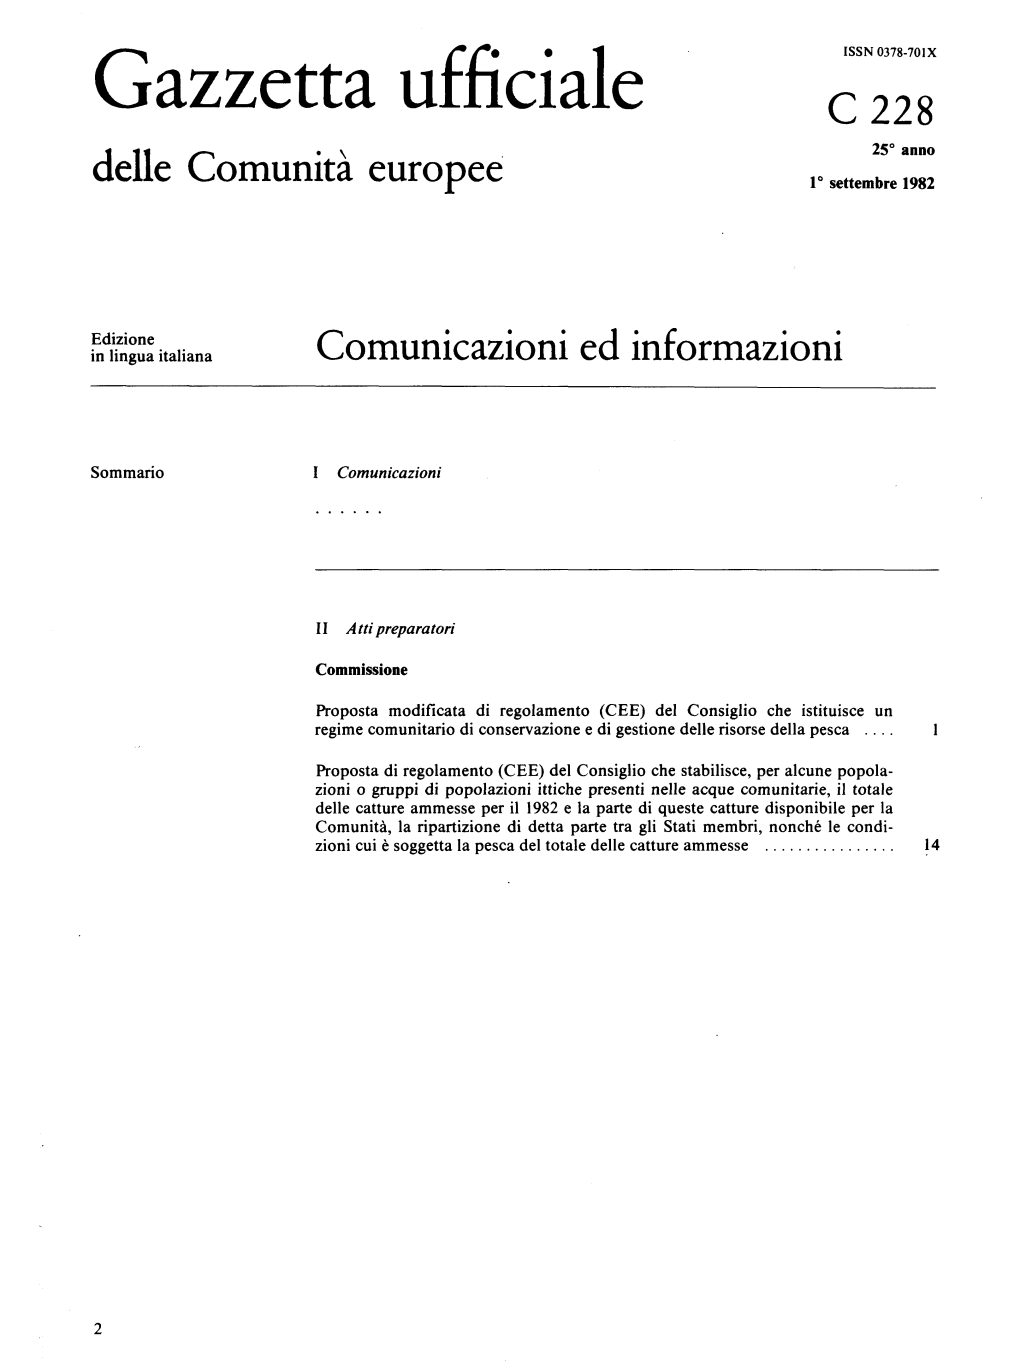 Gazzetta Ufficiale C228 25° Anno Delle Comunità Europee 1° Settembre 1982